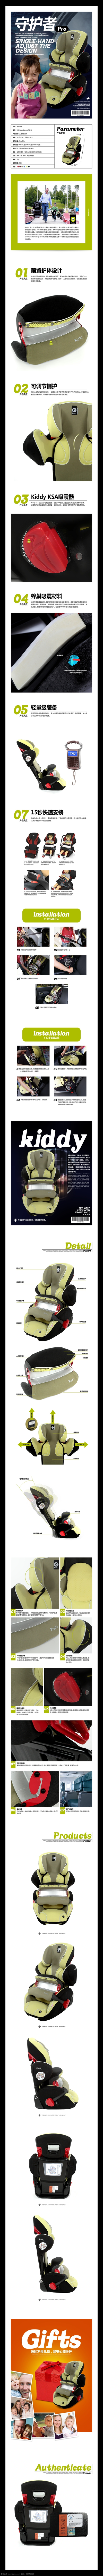 婴幼儿 汽车 安全 座椅 详情 页 车载 用品 描述 通用 模板 白色